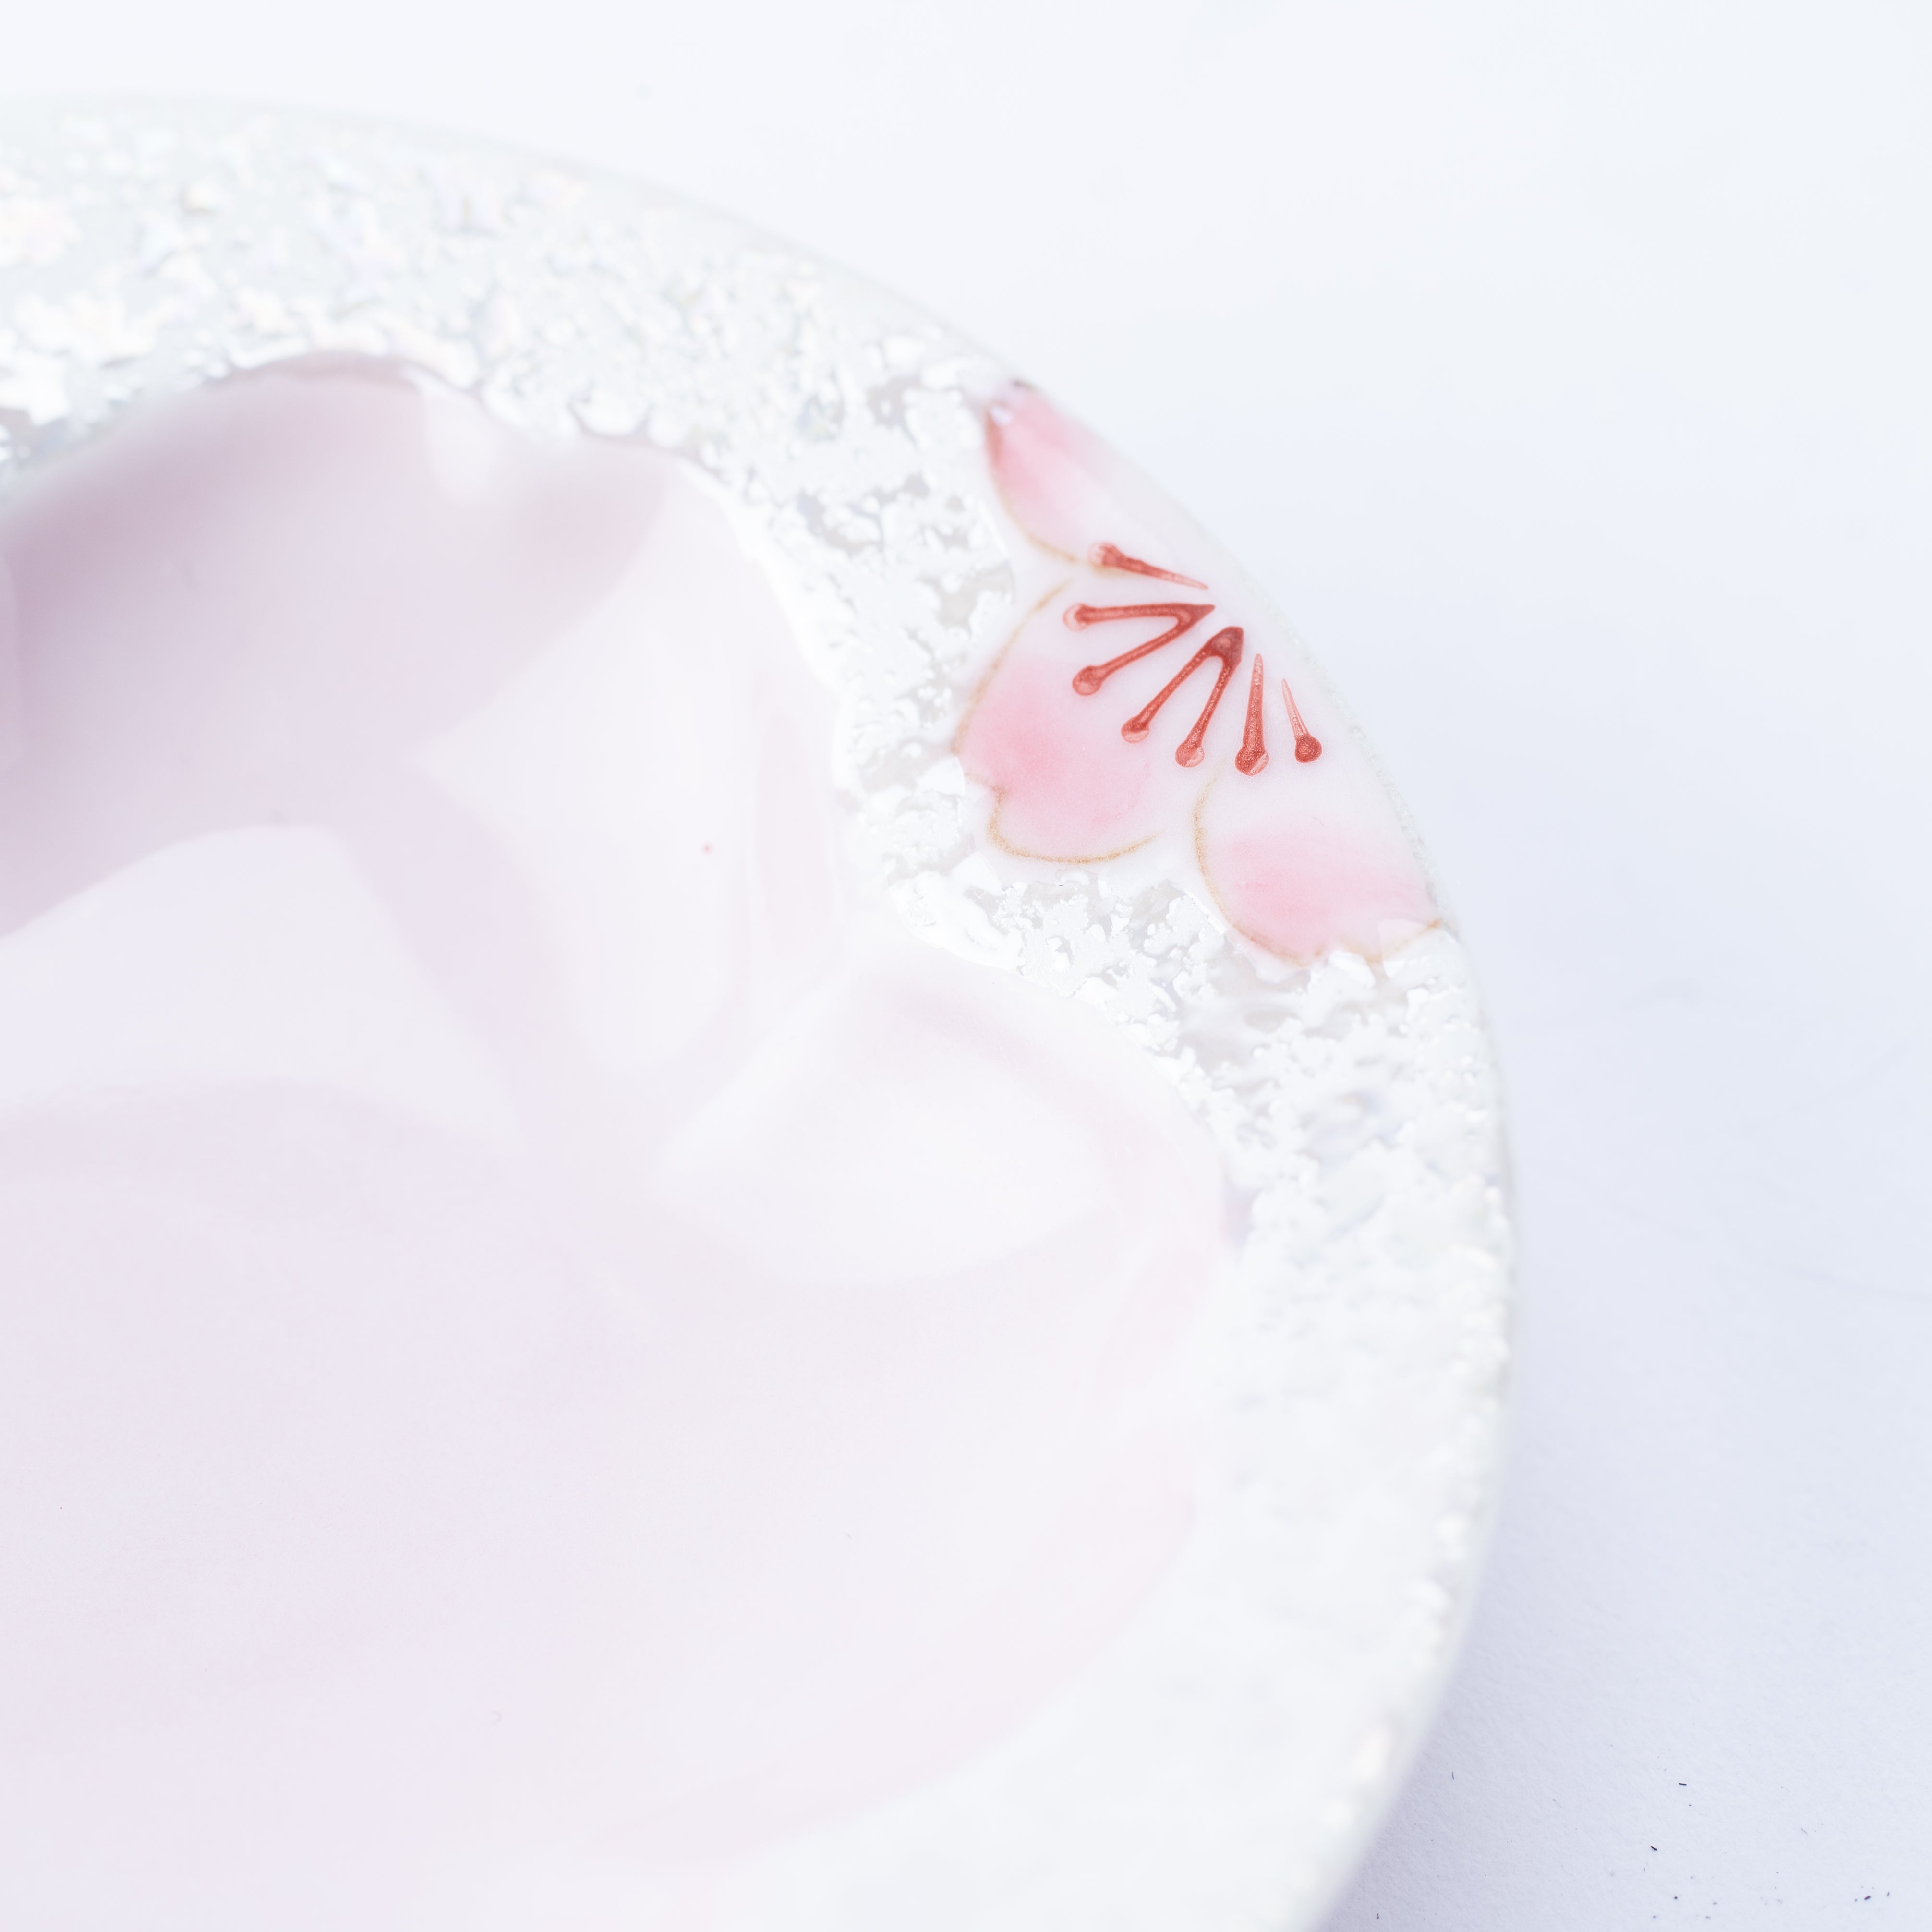 Tasei Kiln Lustrous Pink Sakura Arita Ware Small Sauce Plate